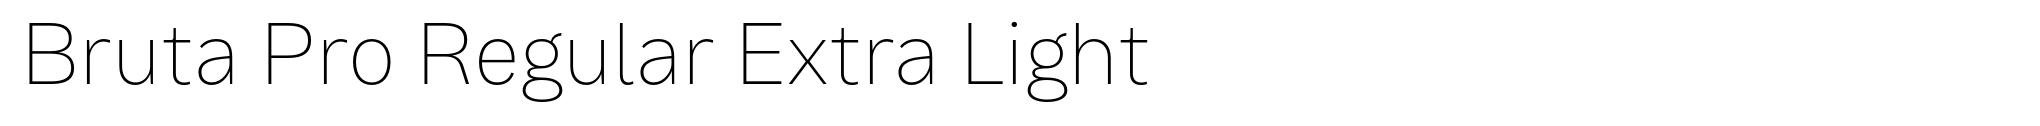 Bruta Pro Regular Extra Light image